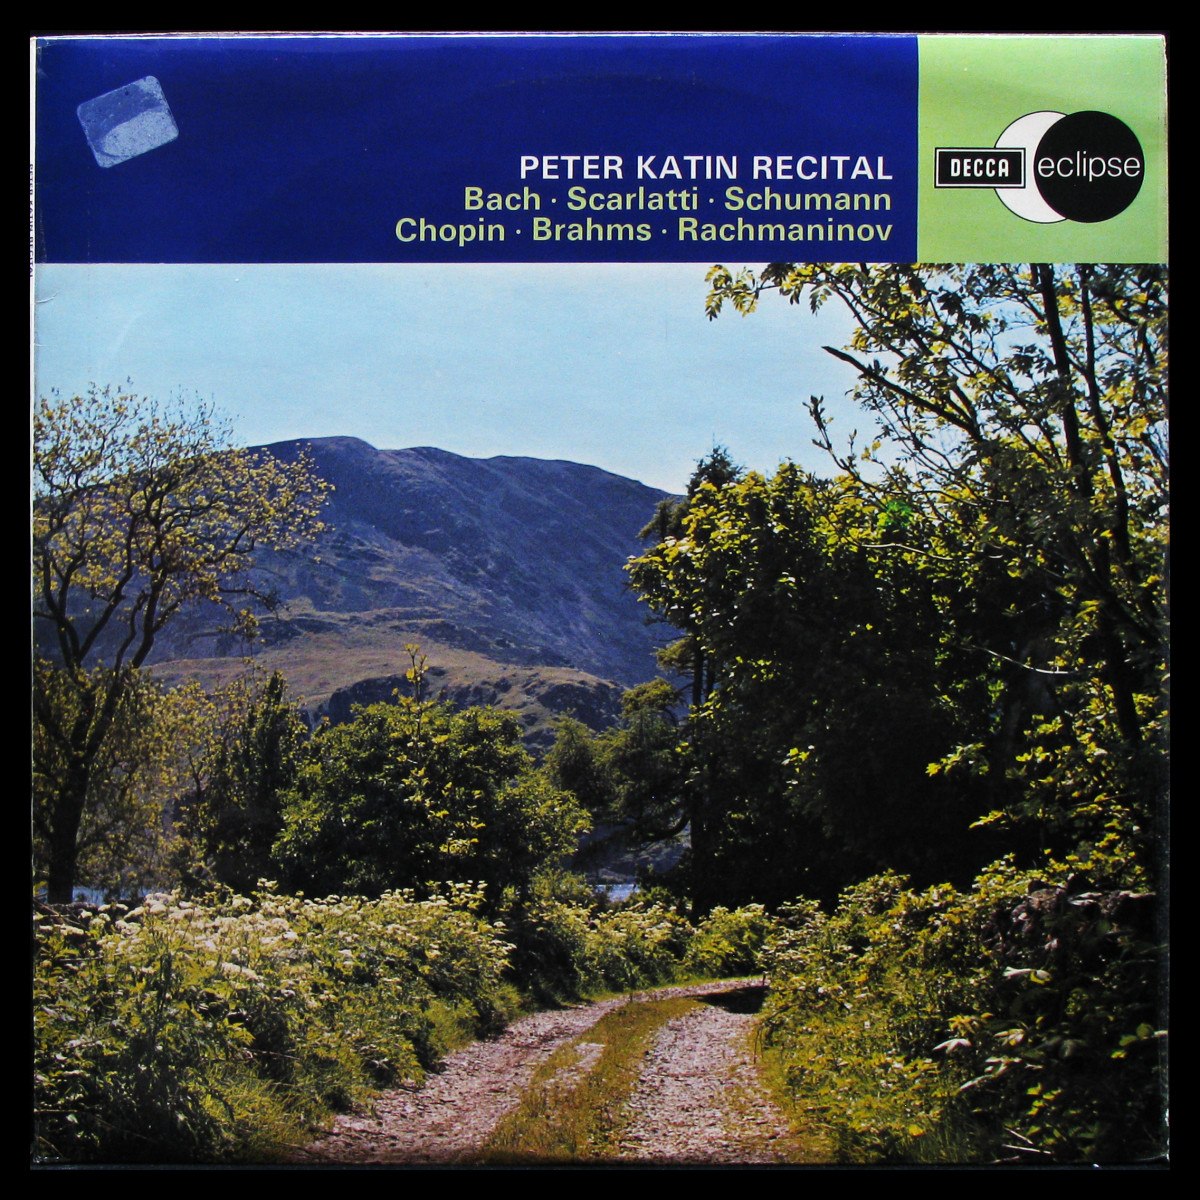 LP Peter Katin — Peter Katin Recital фото